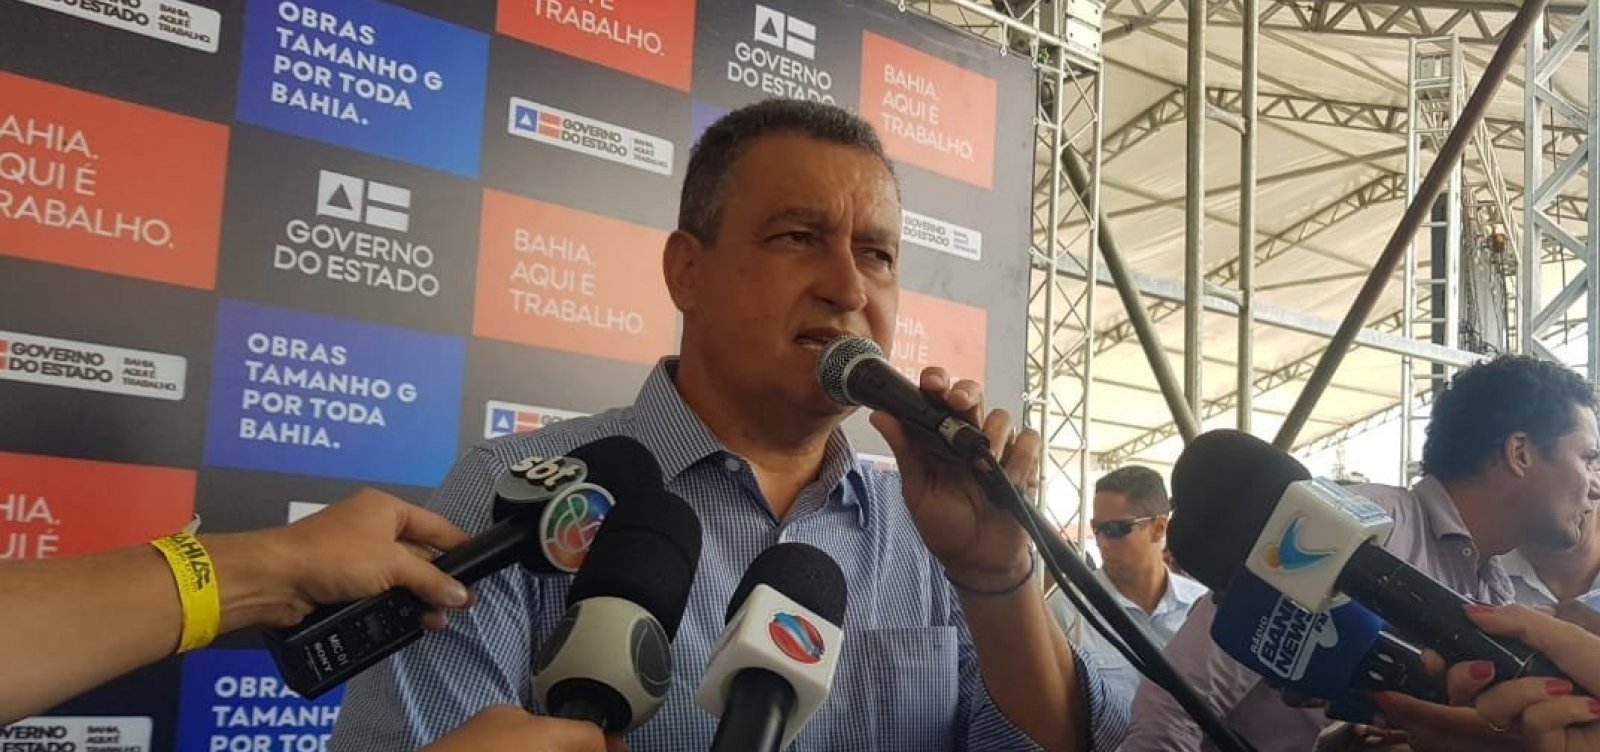 Rui rebate deputado do PSL que chamou Bahia de ‘lixo governado pelo PT’